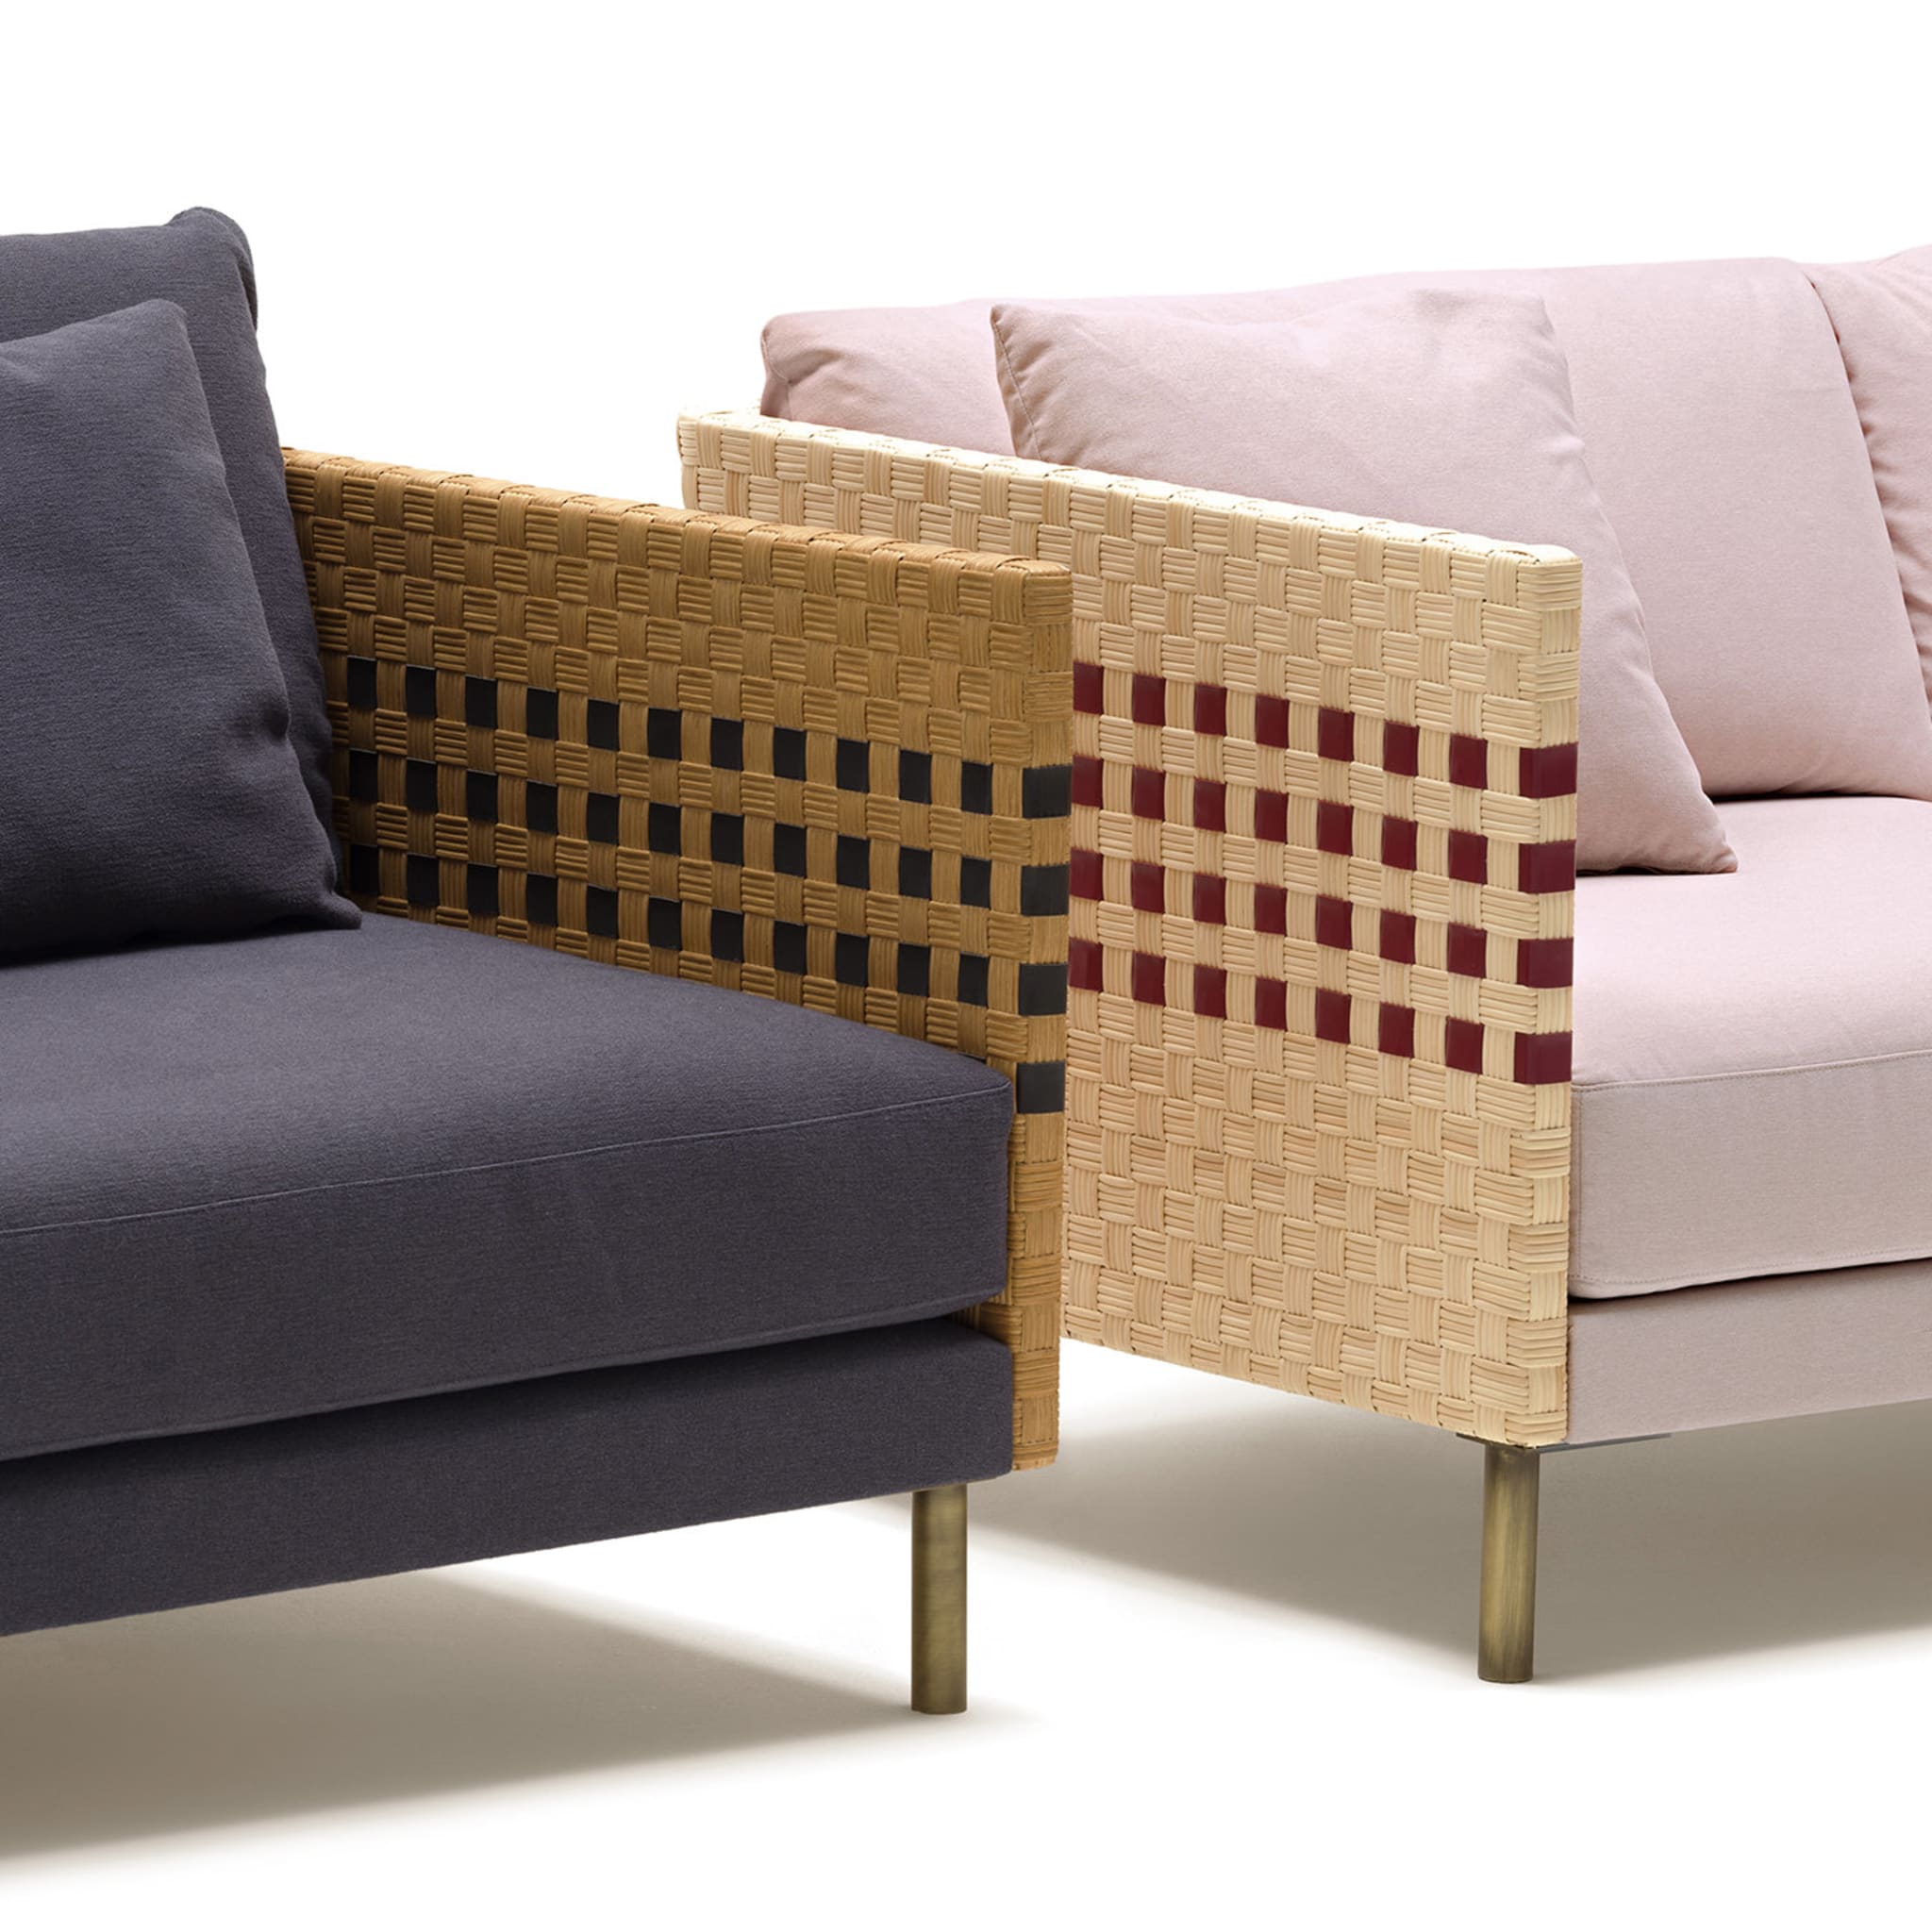 Milli 3-Seater Sofa by Angeletti Ruzza Design - Alternative view 3